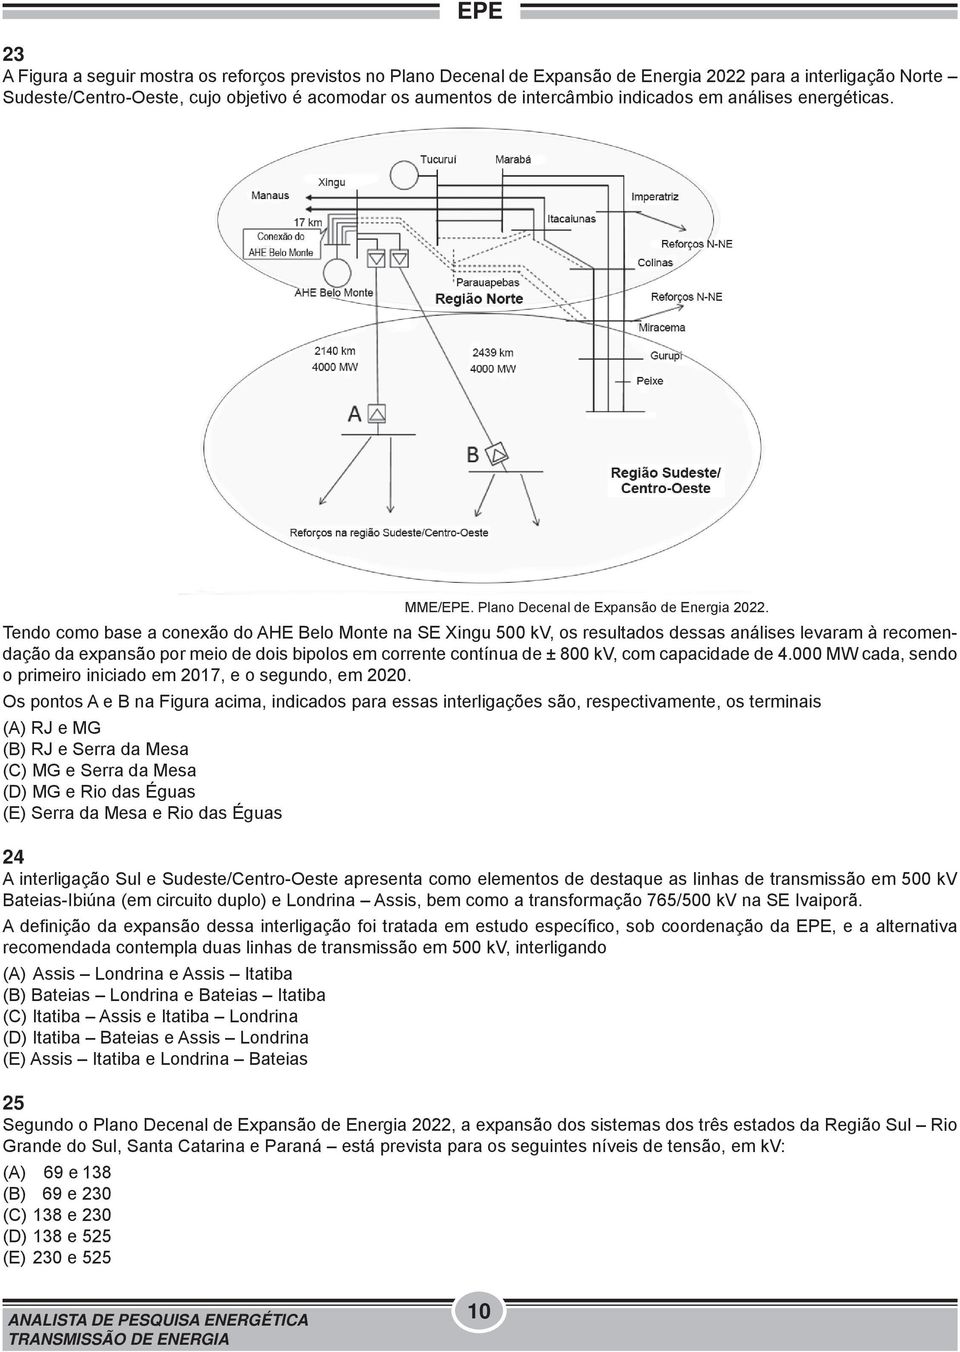 Tendo como base a conexão do AHE Belo Monte na SE Xingu 500 kv, os resultados dessas análises levaram à recomendação da expansão por meio de dois bipolos em corrente contínua de ± 800 kv, com